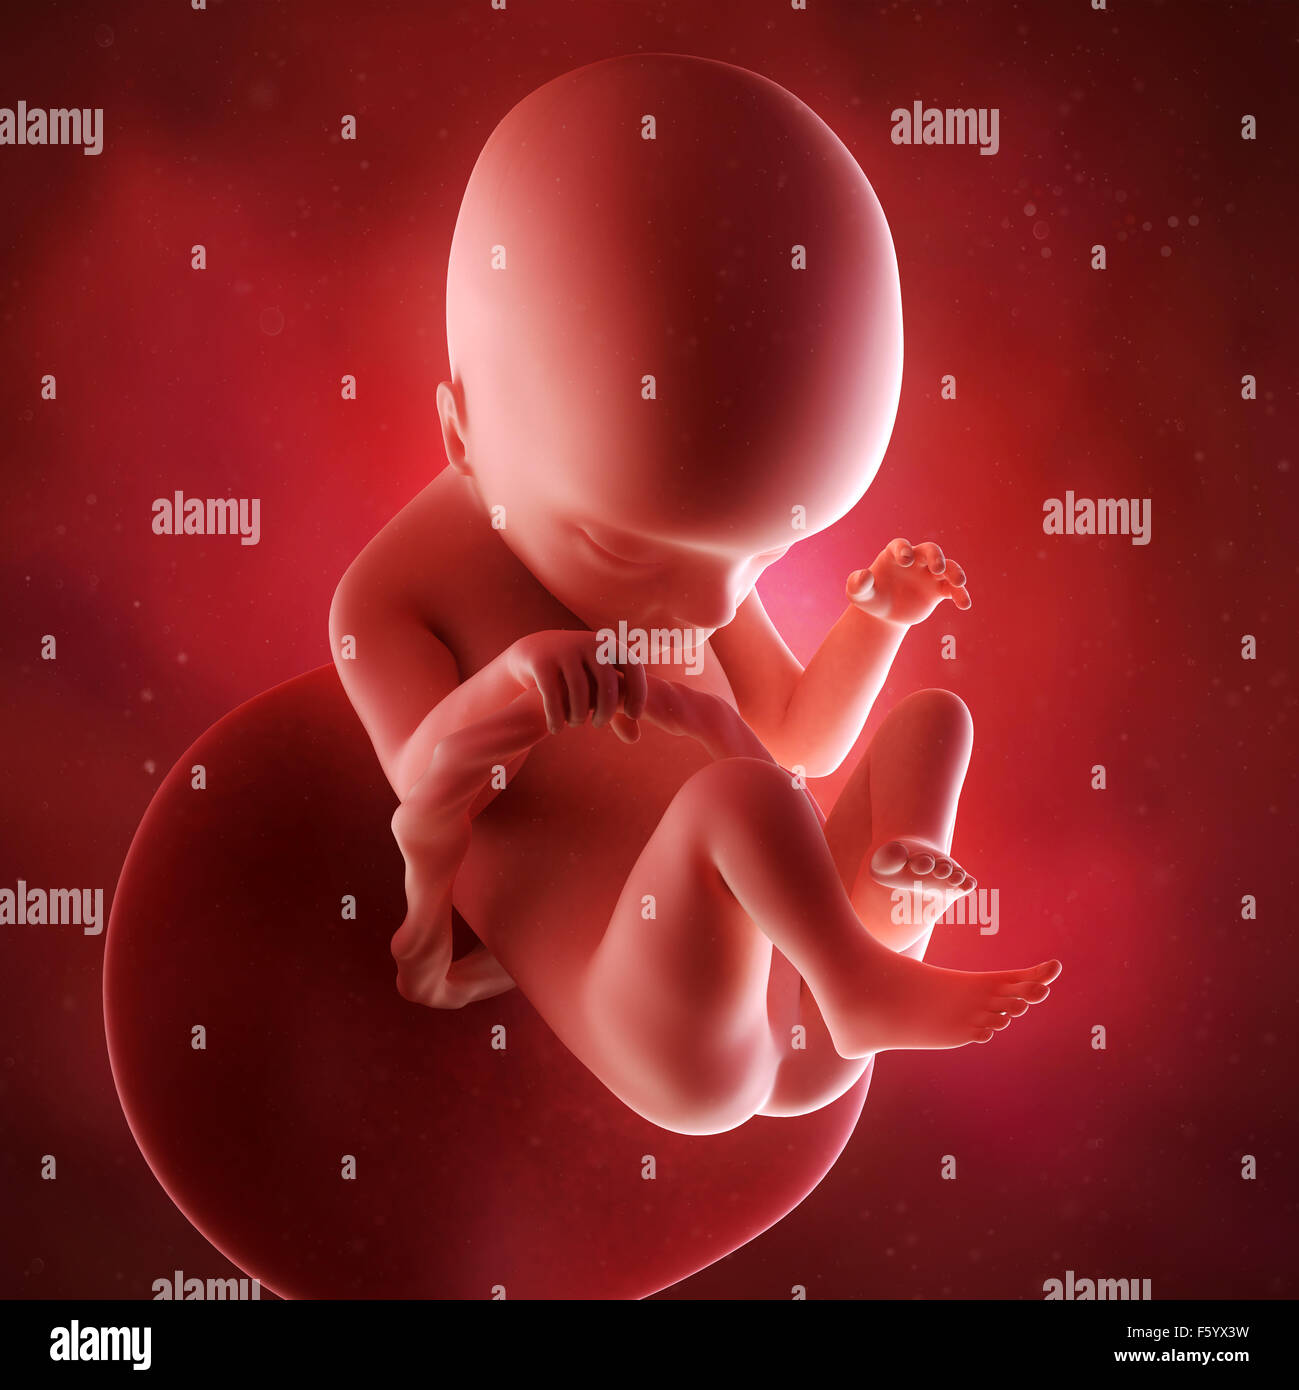 Précision médicale 3d illustration d'un foetus de la semaine 18 Banque D'Images